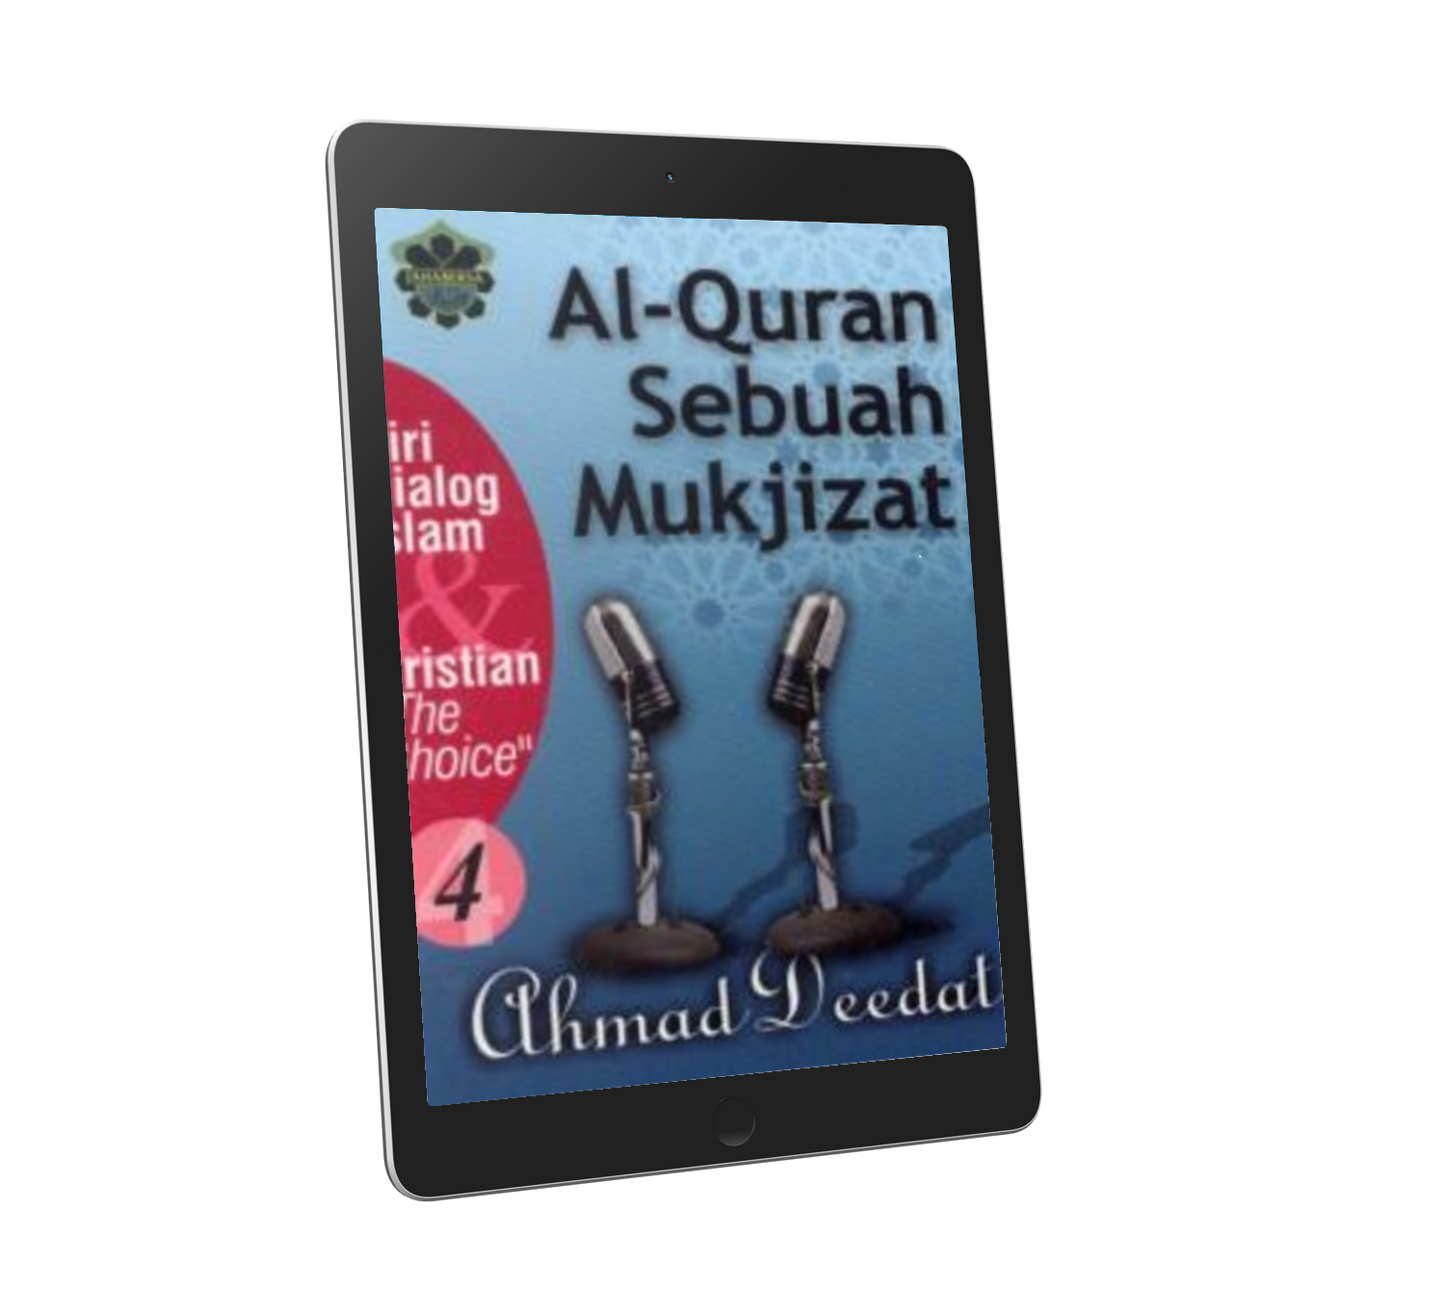 Siri Dialog Islam & Kristian "The Choice" Siri 4: Al-Quran Sebagai Mukjizat